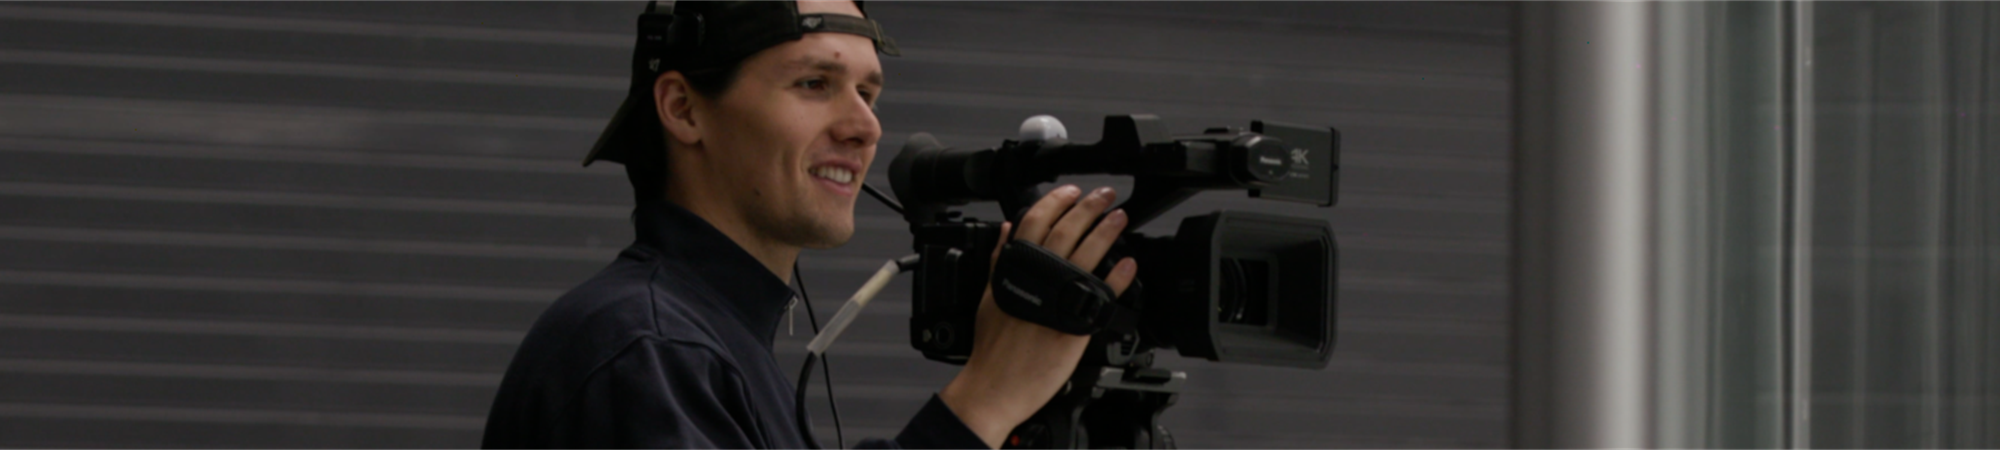 BrockTV producer operating a camera.